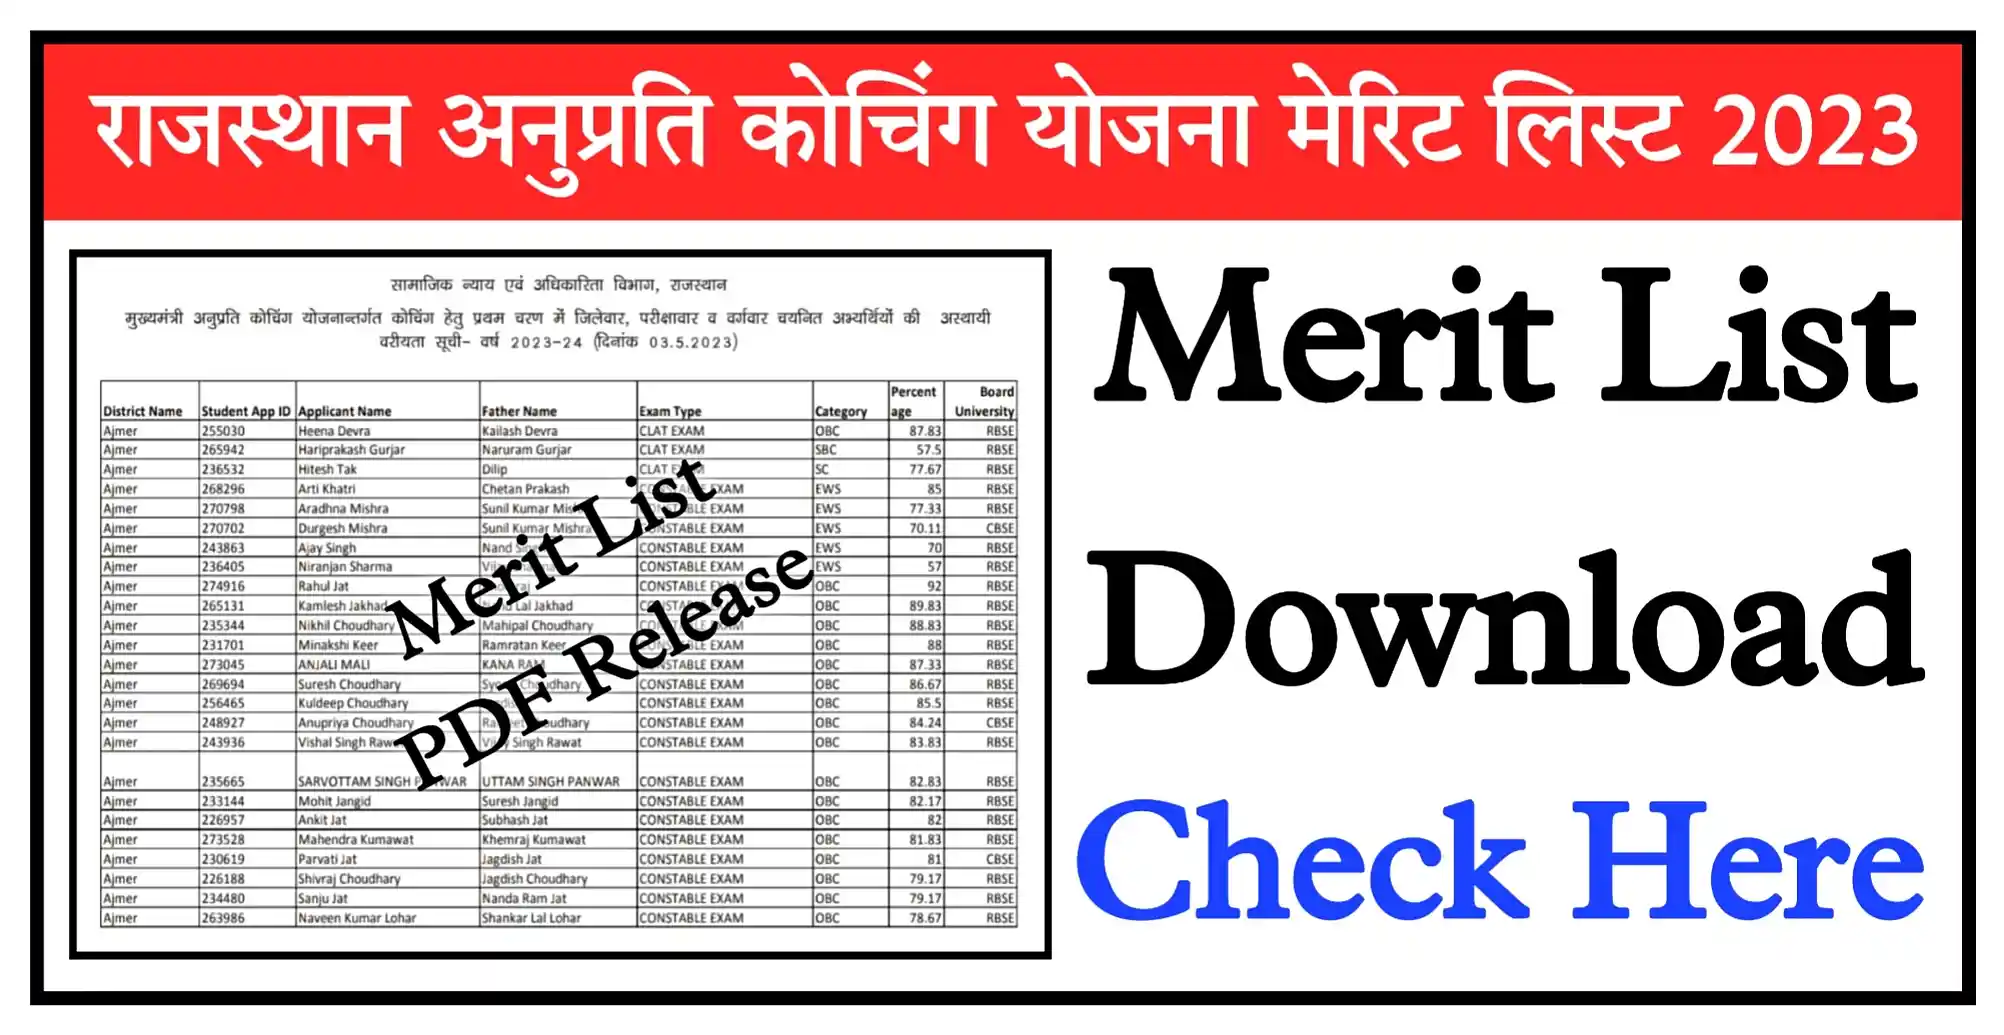 Rajasthan Anuprati Coaching Yojana Merit List 2023 PDF Download मुख्यमंत्री अनुप्रति कोचिंग योजना की मेरिट लिस्ट जारी, यहां से चेक करें